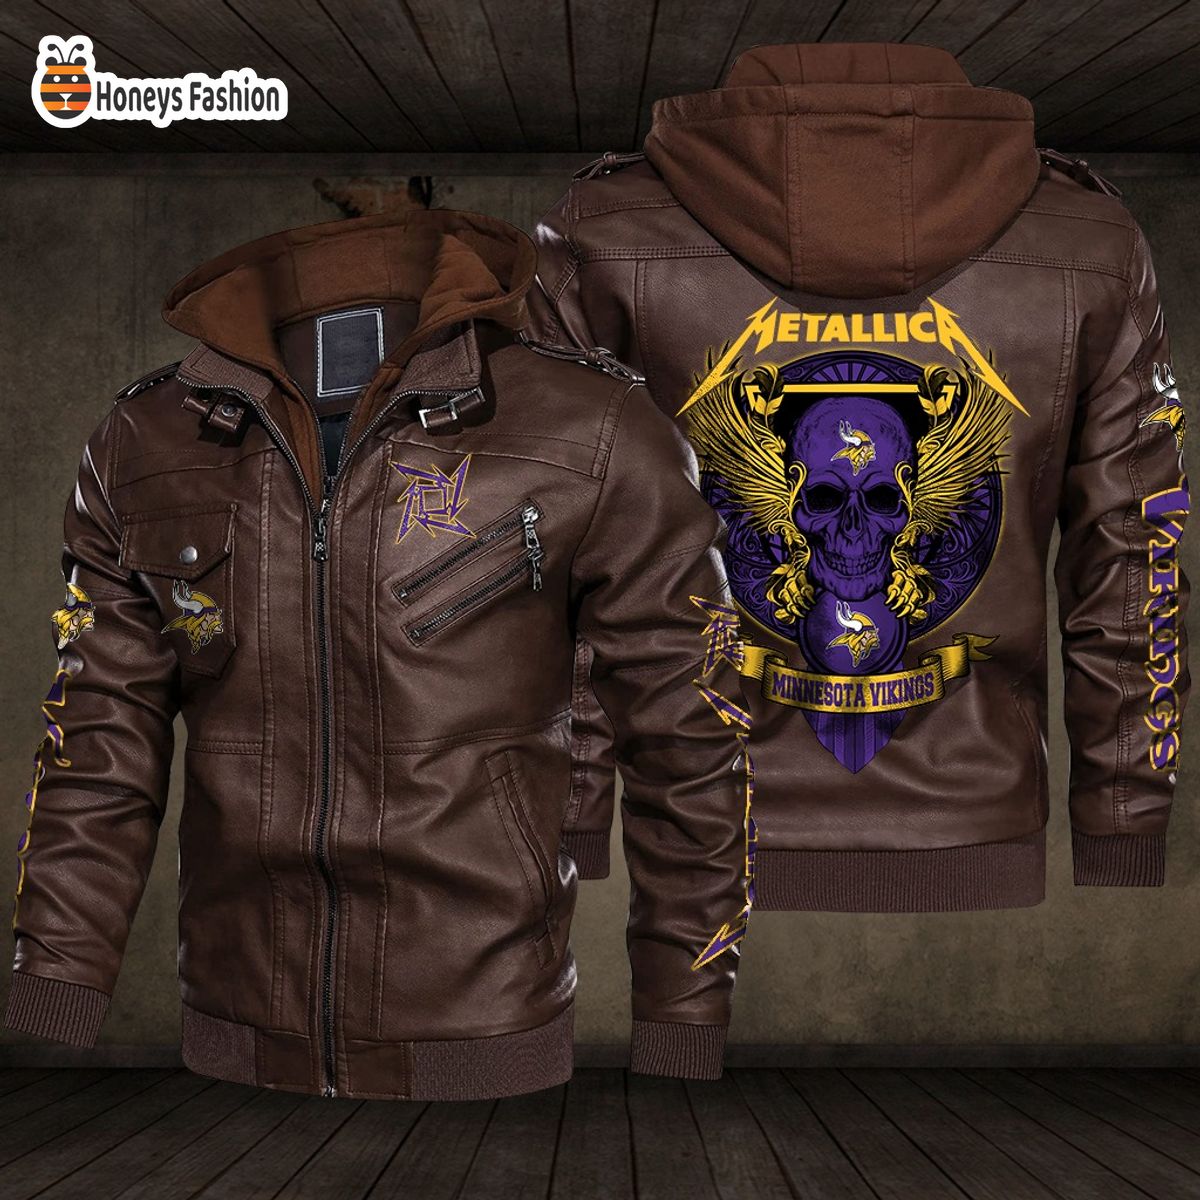 Minnesota Vikings NFL Metallica 2D PU Leather Jacket